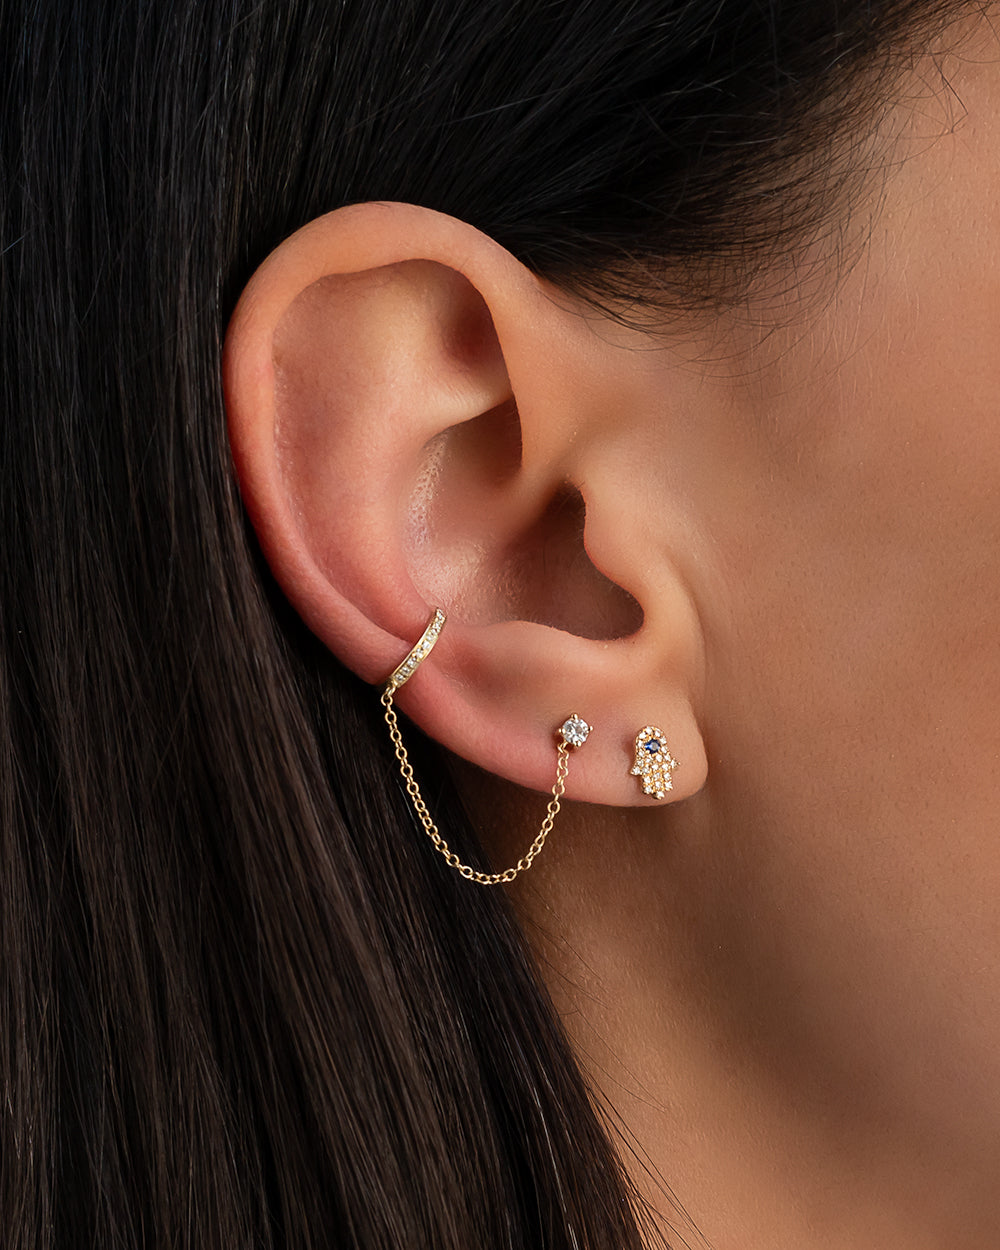 Silver Ear Cuff Earring Double Chain, Double Chain Ear Cuff, Ear Cuff, Ear  Cuffs Earring, Ear Cuff Sterling Silver, Earcuff, Ear Cuff Chain - Etsy  Israel